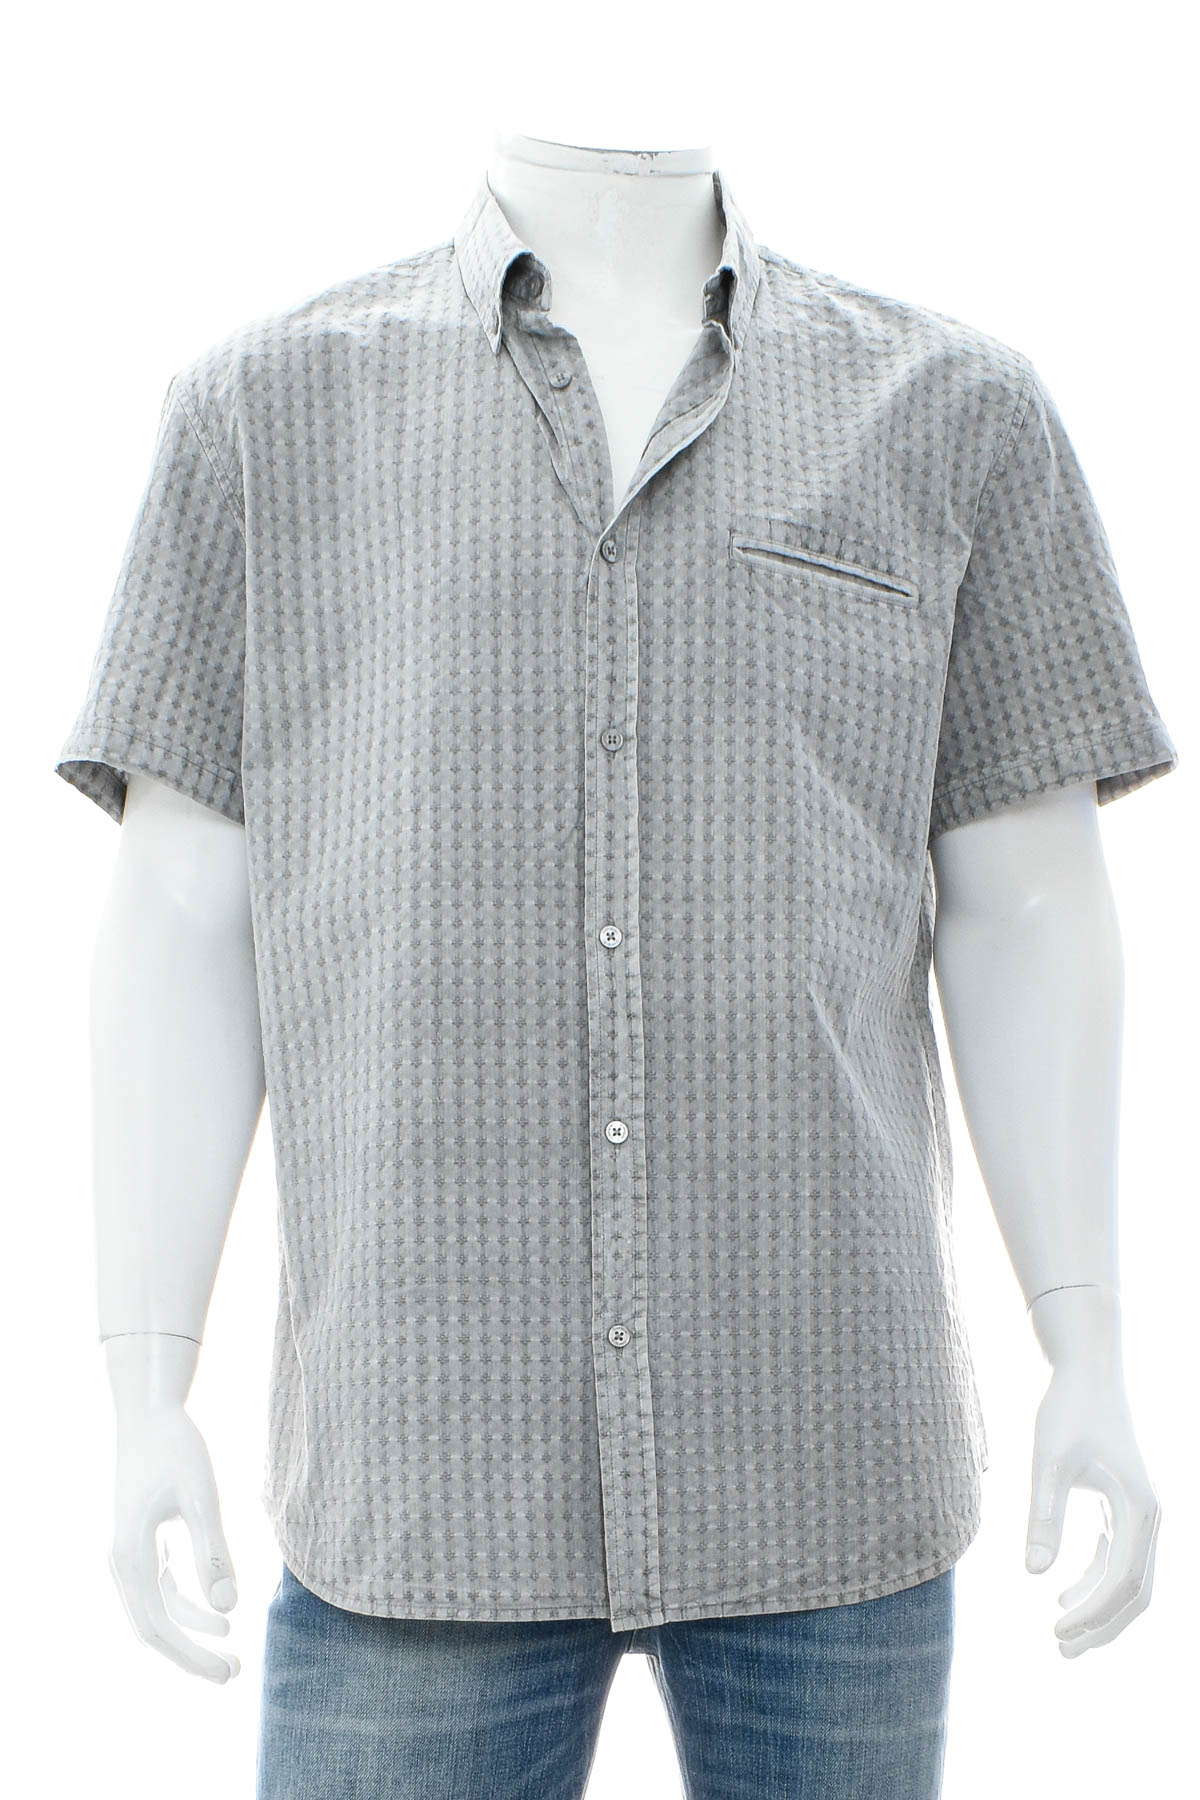 Ανδρικό πουκάμισο - Desigual - 0